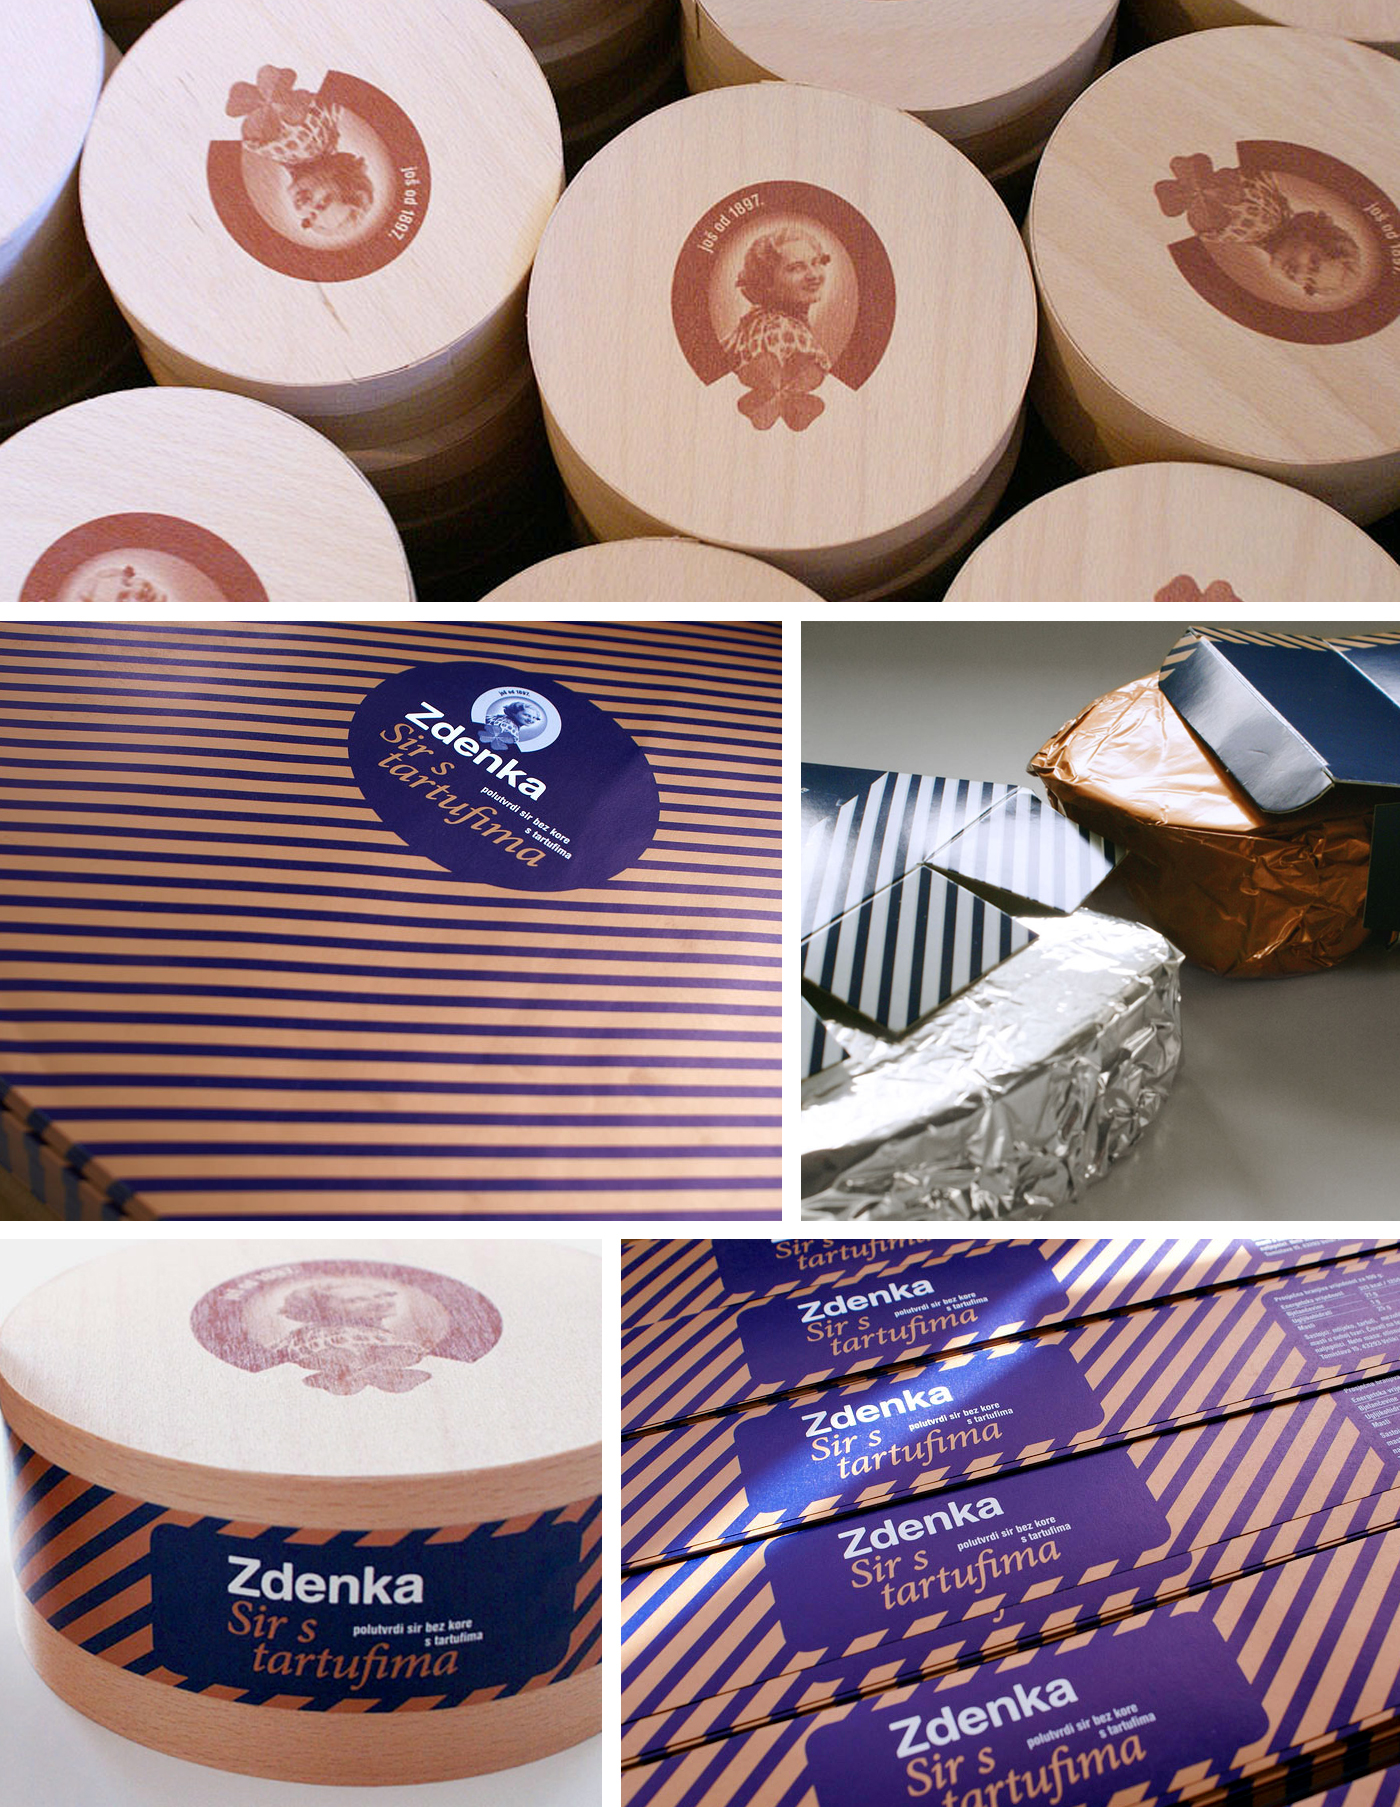 Zdenka Cheese packaging retro branding rebranding product identity